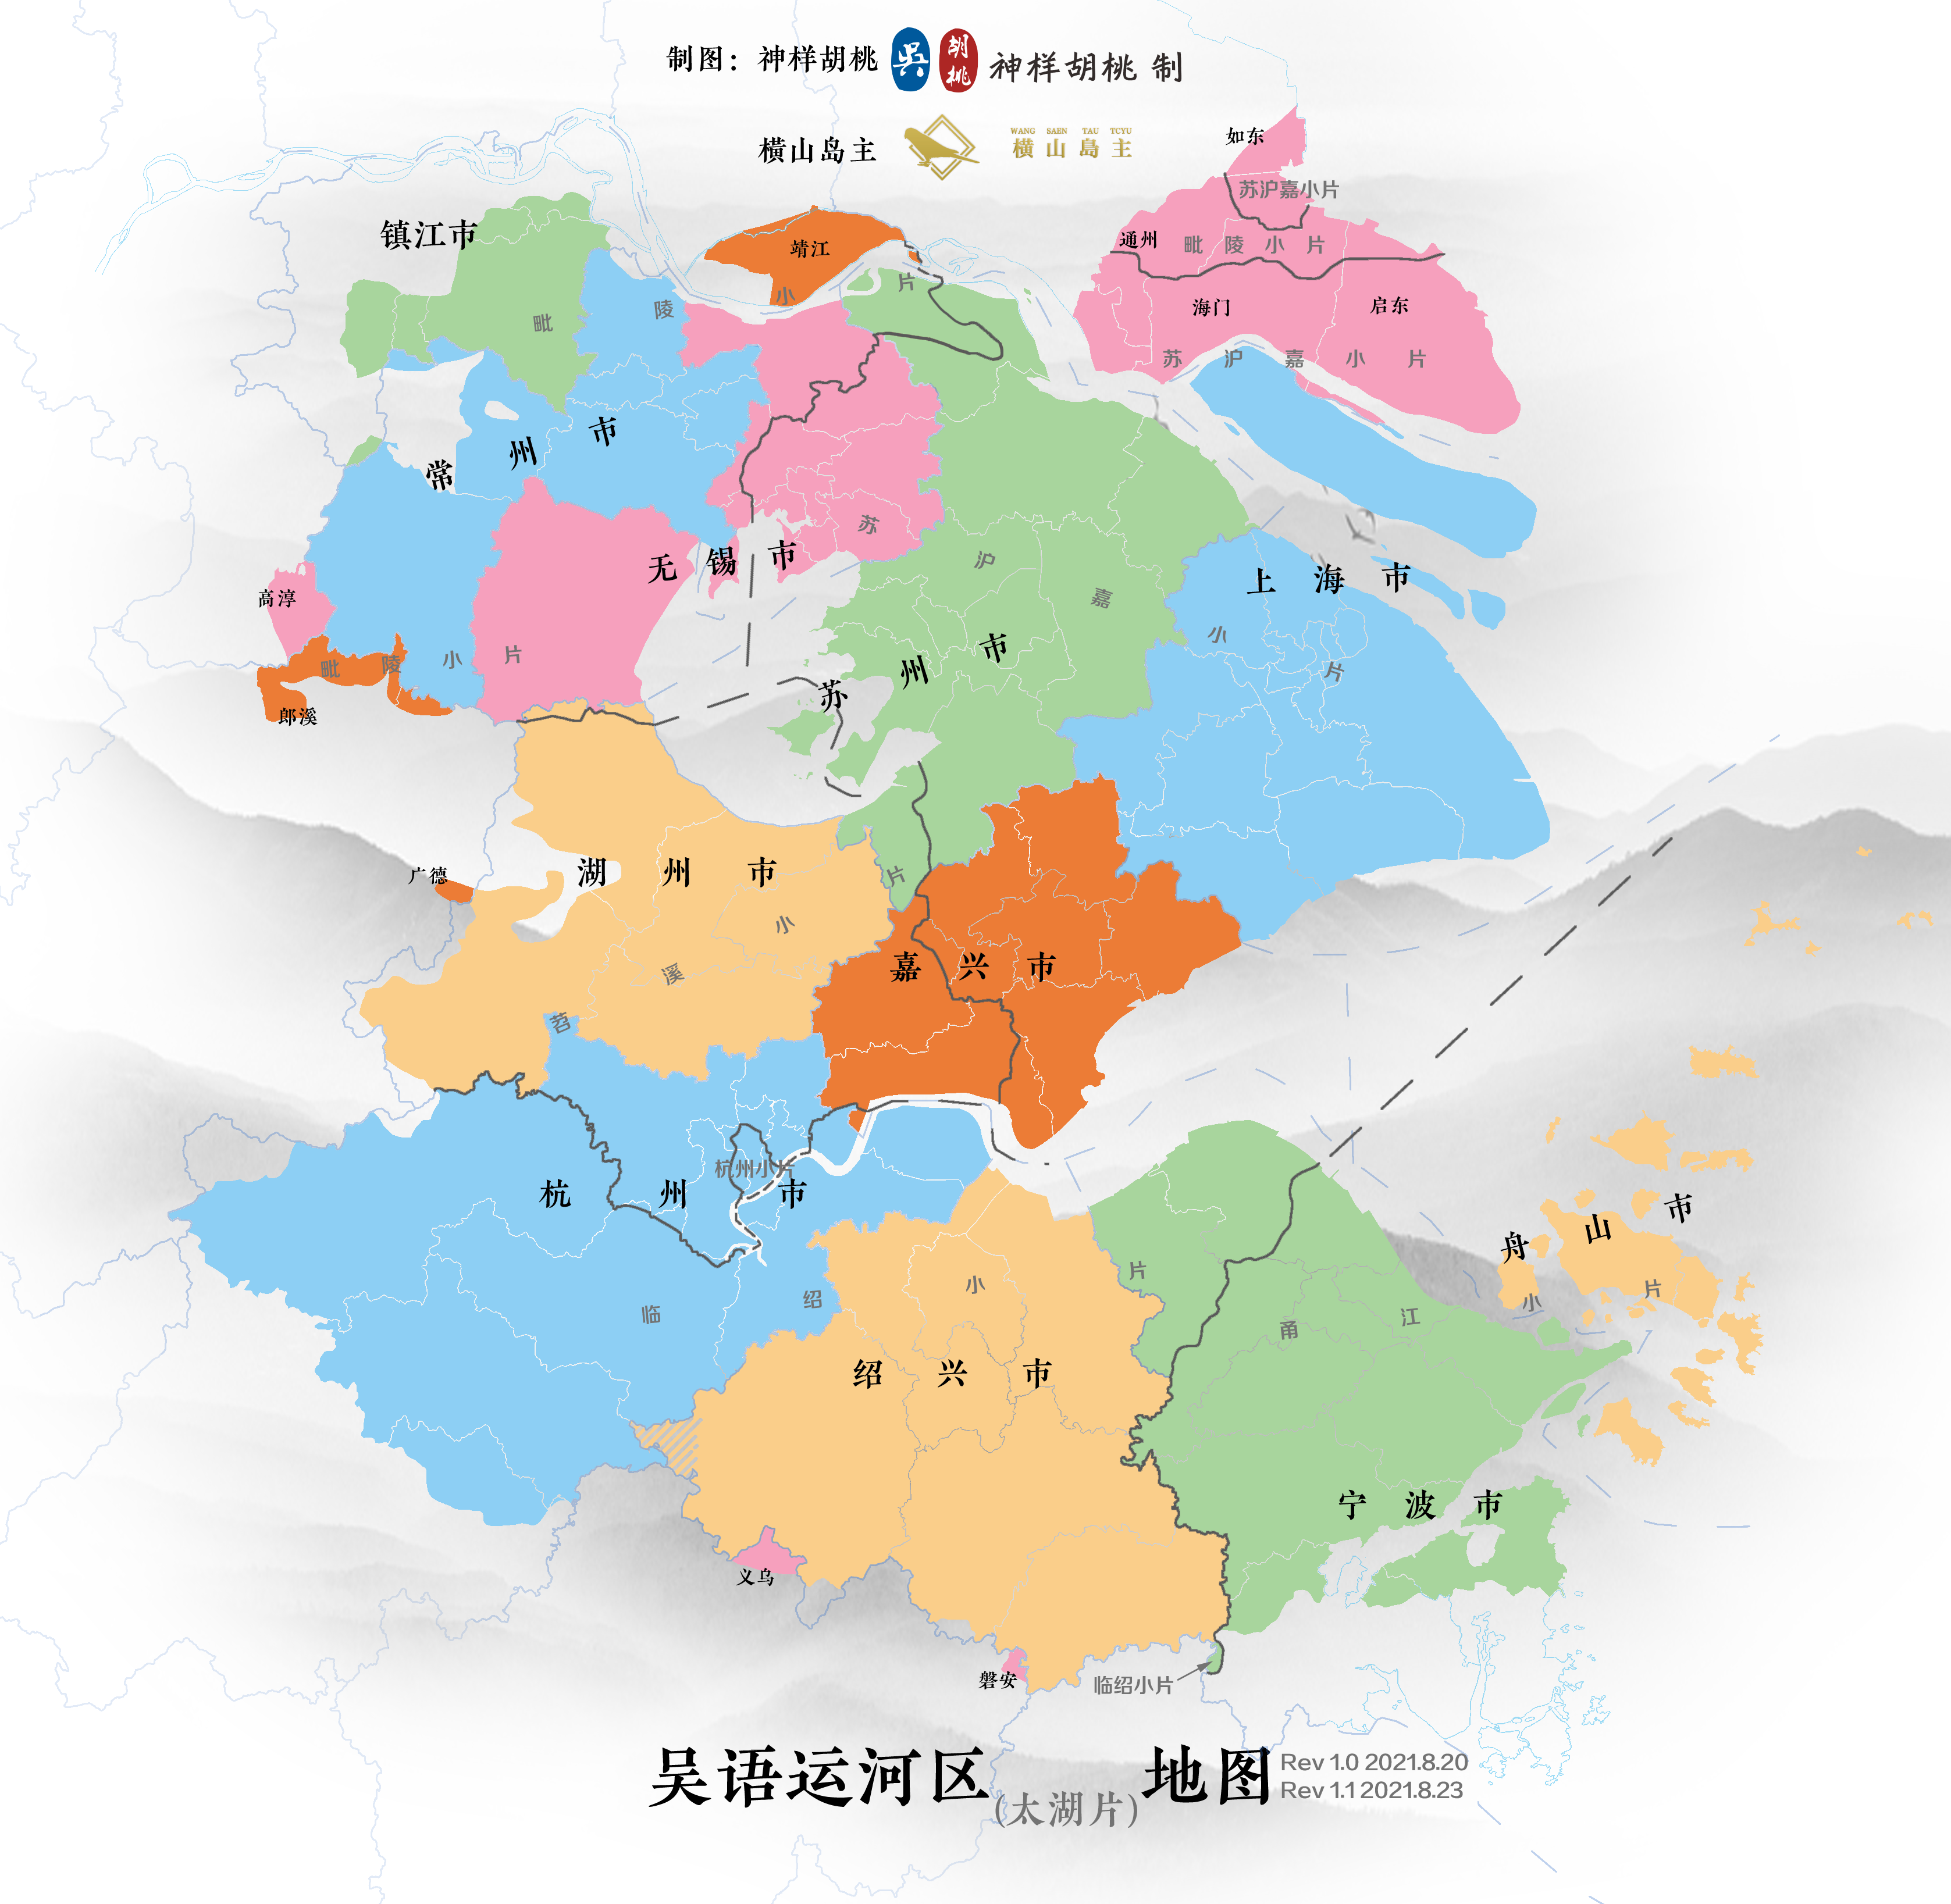 吴语区的语言数量及复杂程度,是否远远超过欧洲语言数量? 